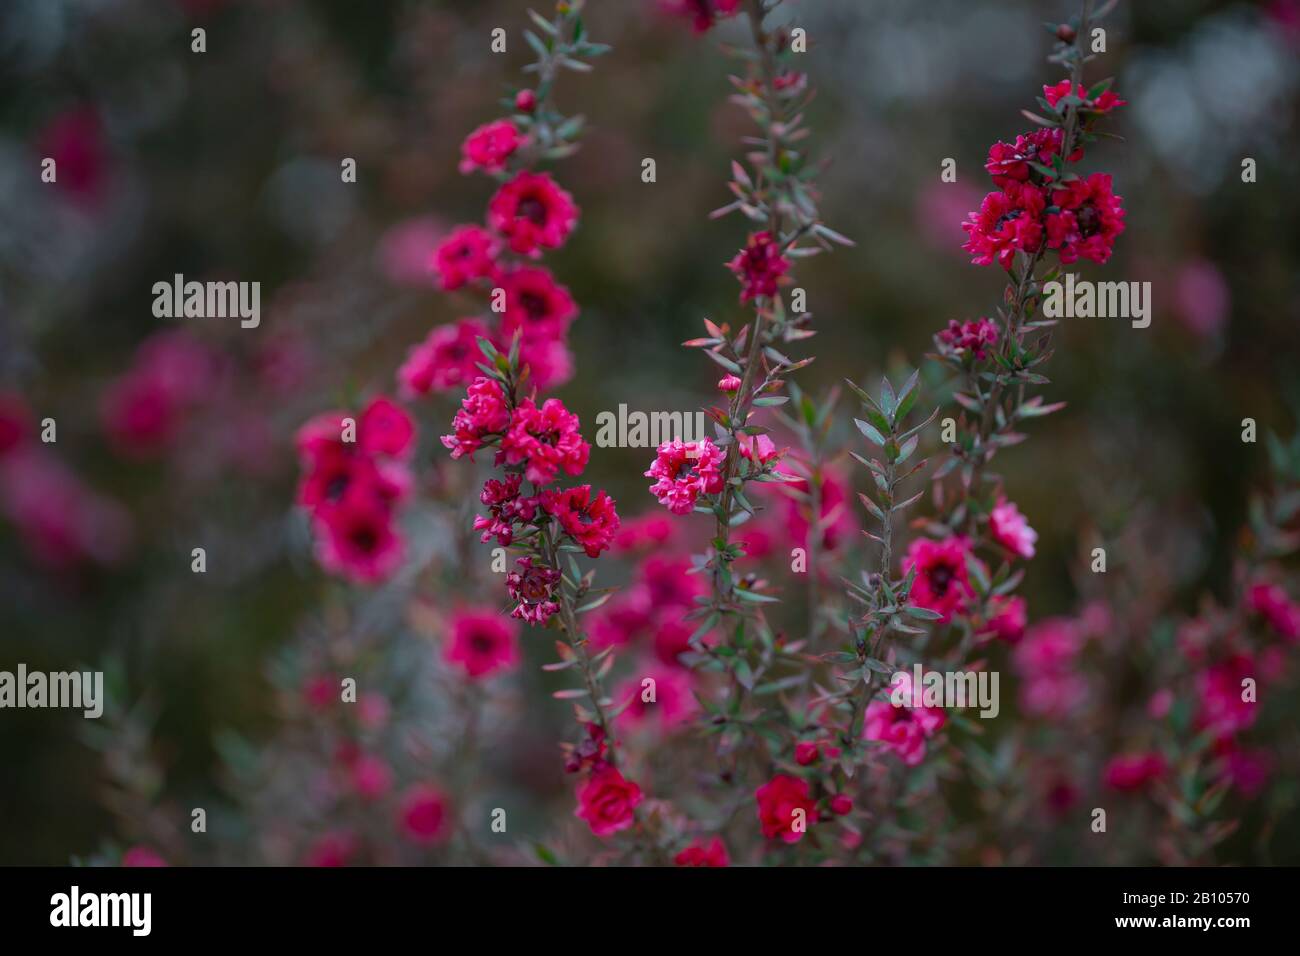 Manuka Pflanze in Blüte. Schöne kleine rosafarbene Blumen von Manuka Baum  Stockfotografie - Alamy